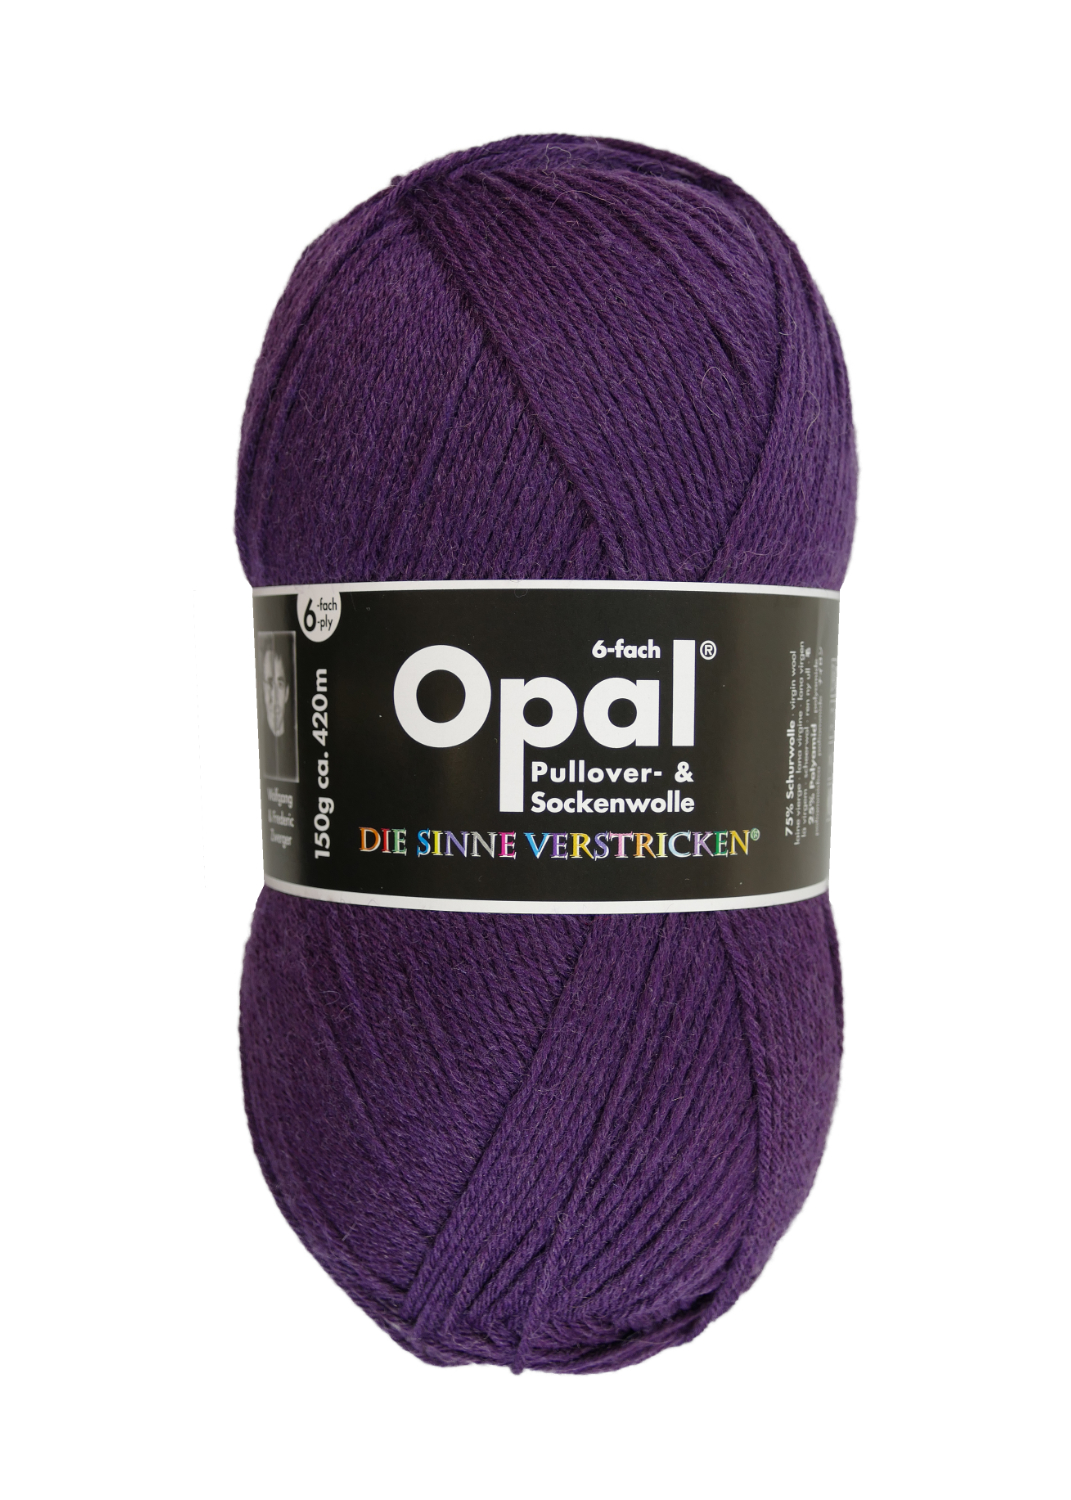 Sockenwolle Uni - 6-fach 150 g von OPAL 7902 - violett